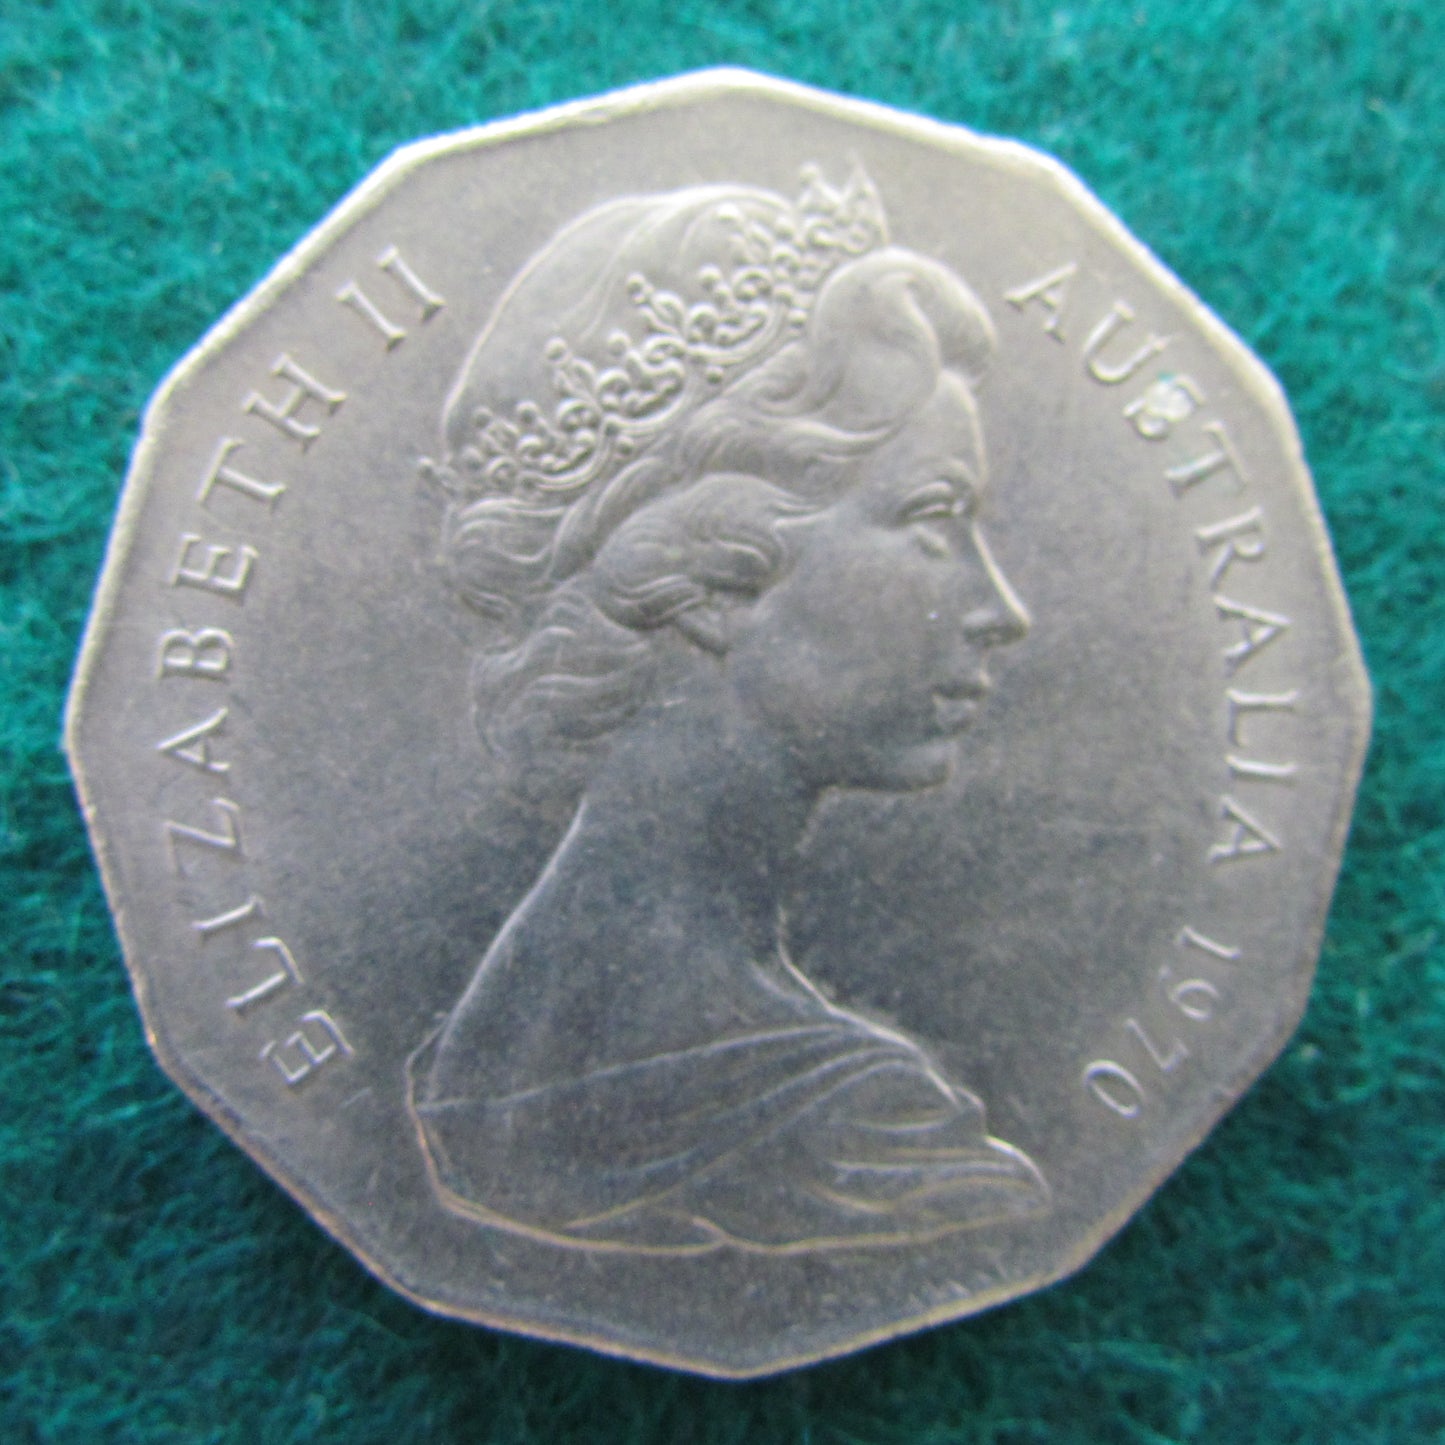 Australian 1970 Captain Cook 50 Cent Queen Elizabeth Coin - Circulated